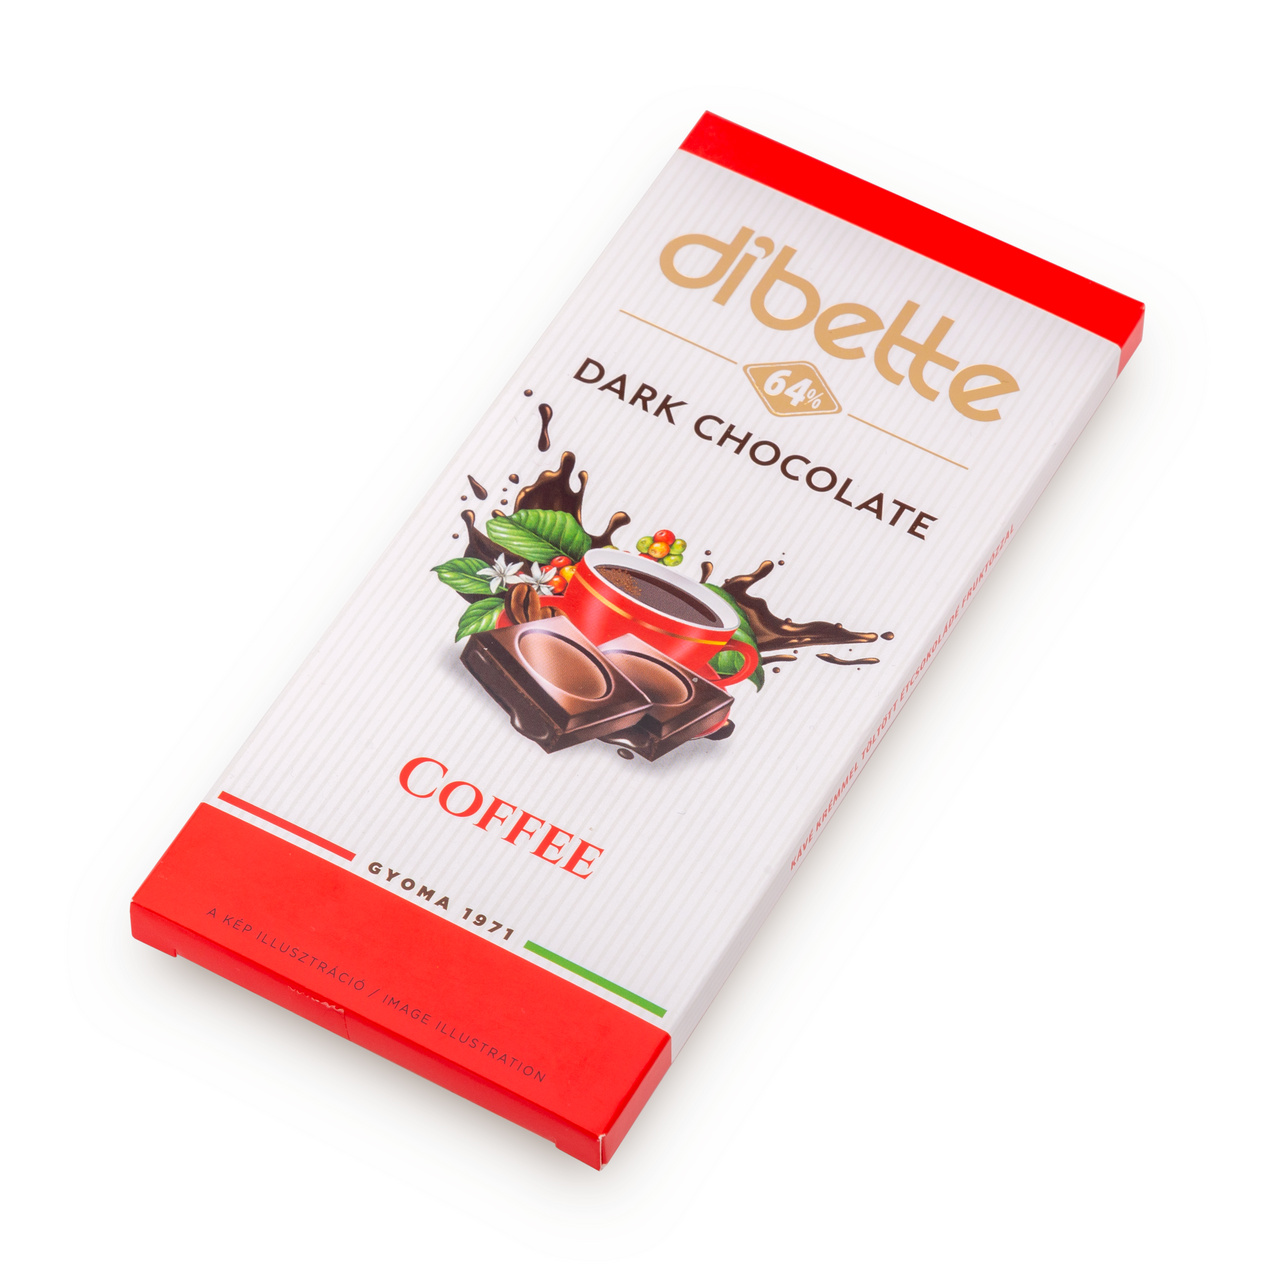 Ciocolată neagră Dibette cu fructoză – cremă de cafea, 80 g